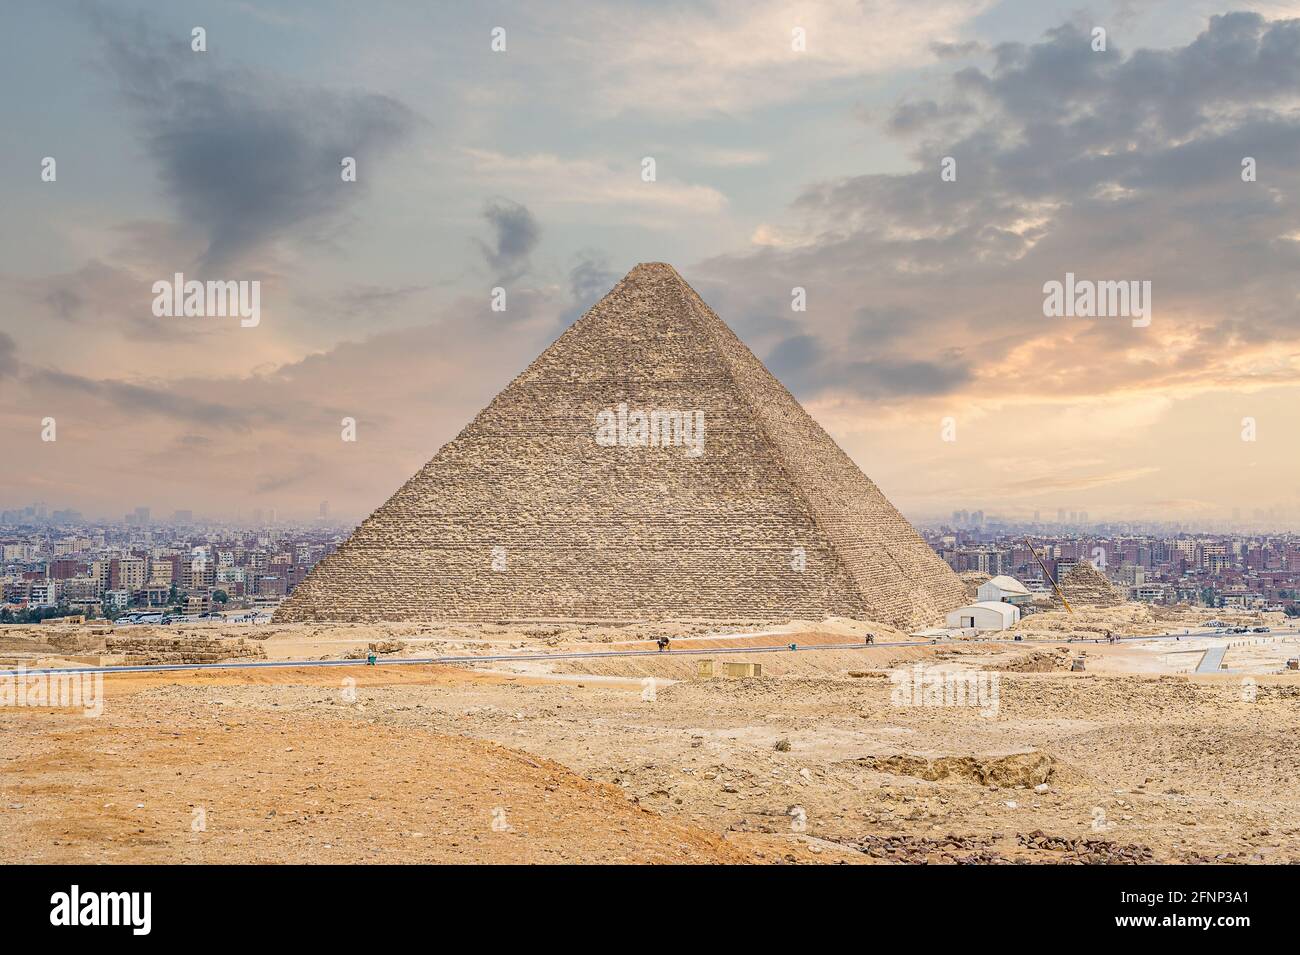 Die große Cheops-Pyramide in Kairo. Ägyptische Pyramiden von Gizeh auf dem Hintergrund von Kairo. Architektonisches Denkmal. Gräber von Pharaonen. Urlaub Stockfoto